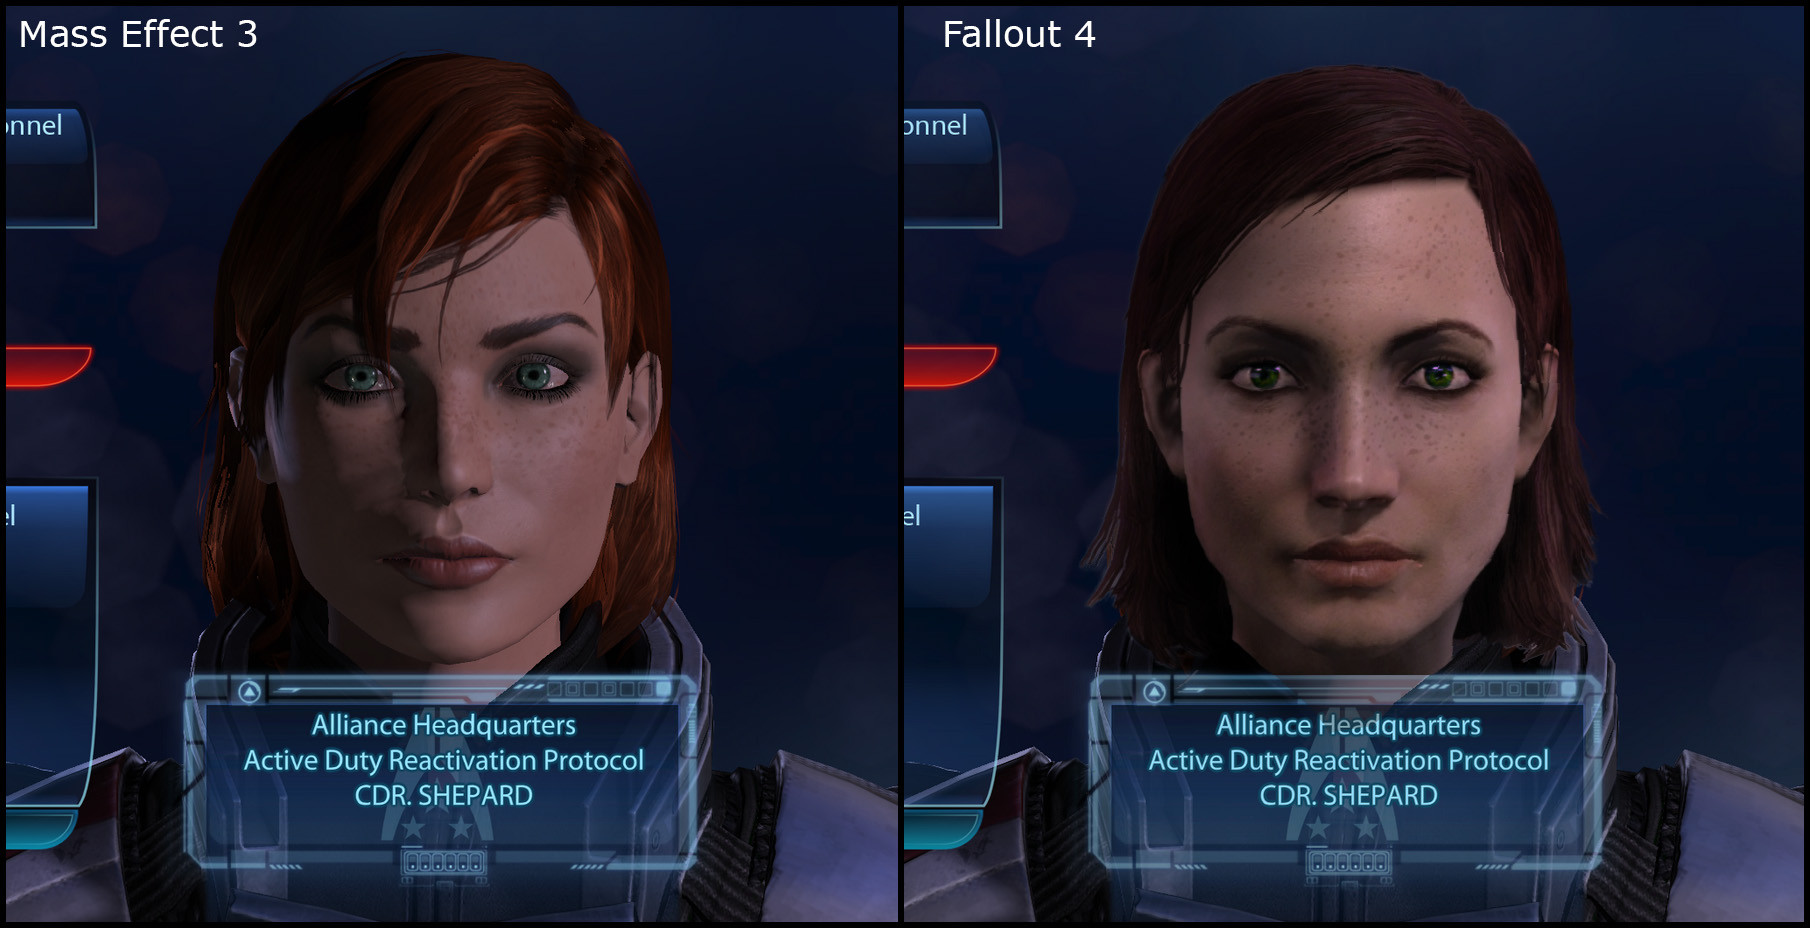 Commander Shepard in Fallout 4